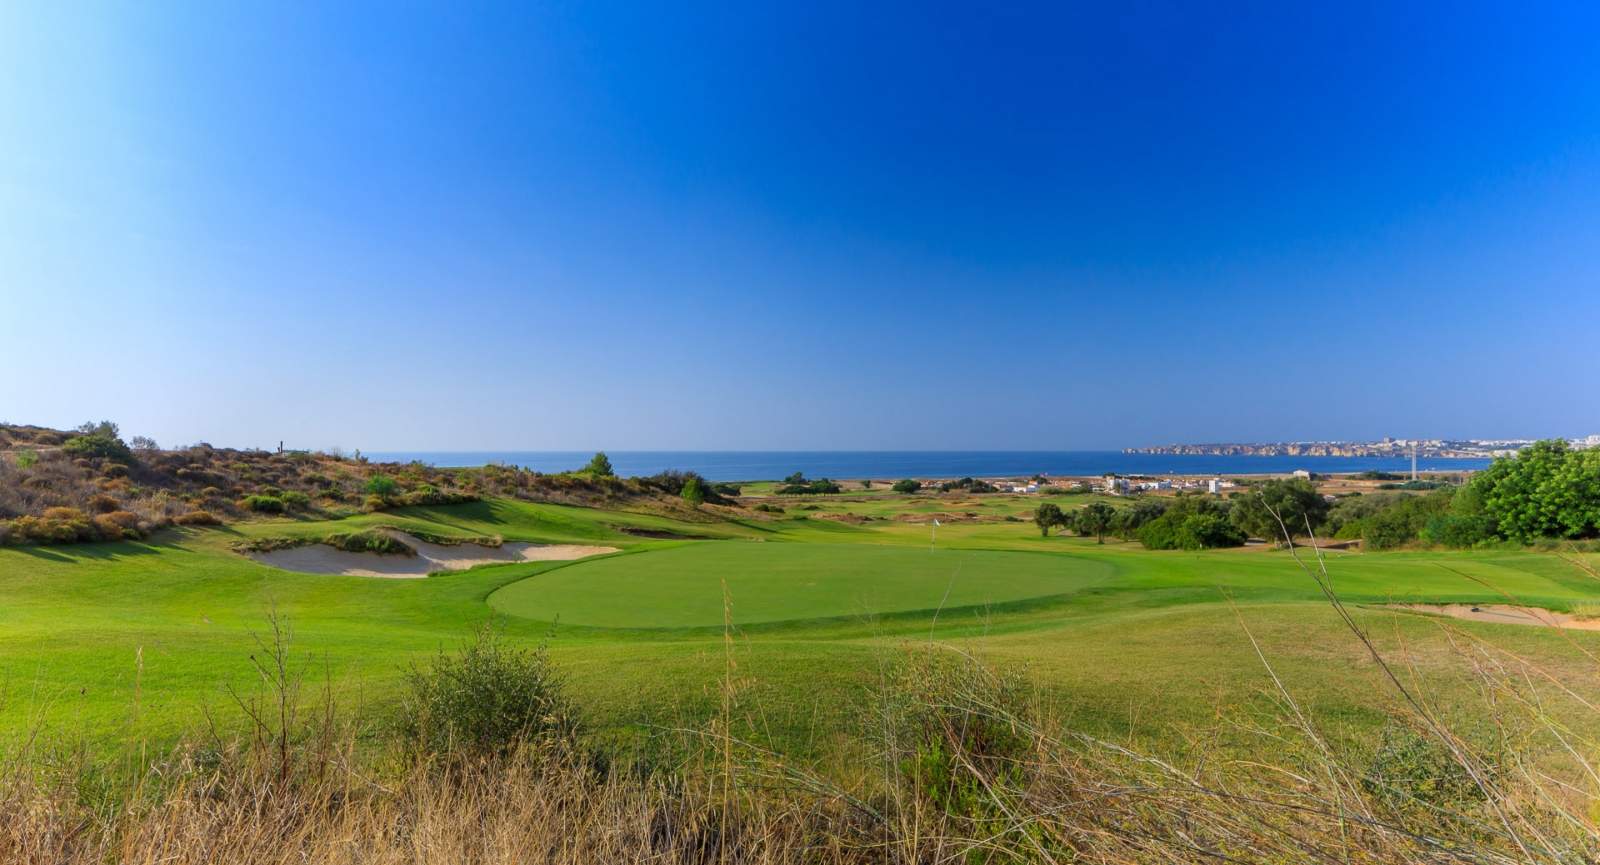 Terrain à vendre dans un complexe de golf, Lagos, Algarve, Portugal_122997